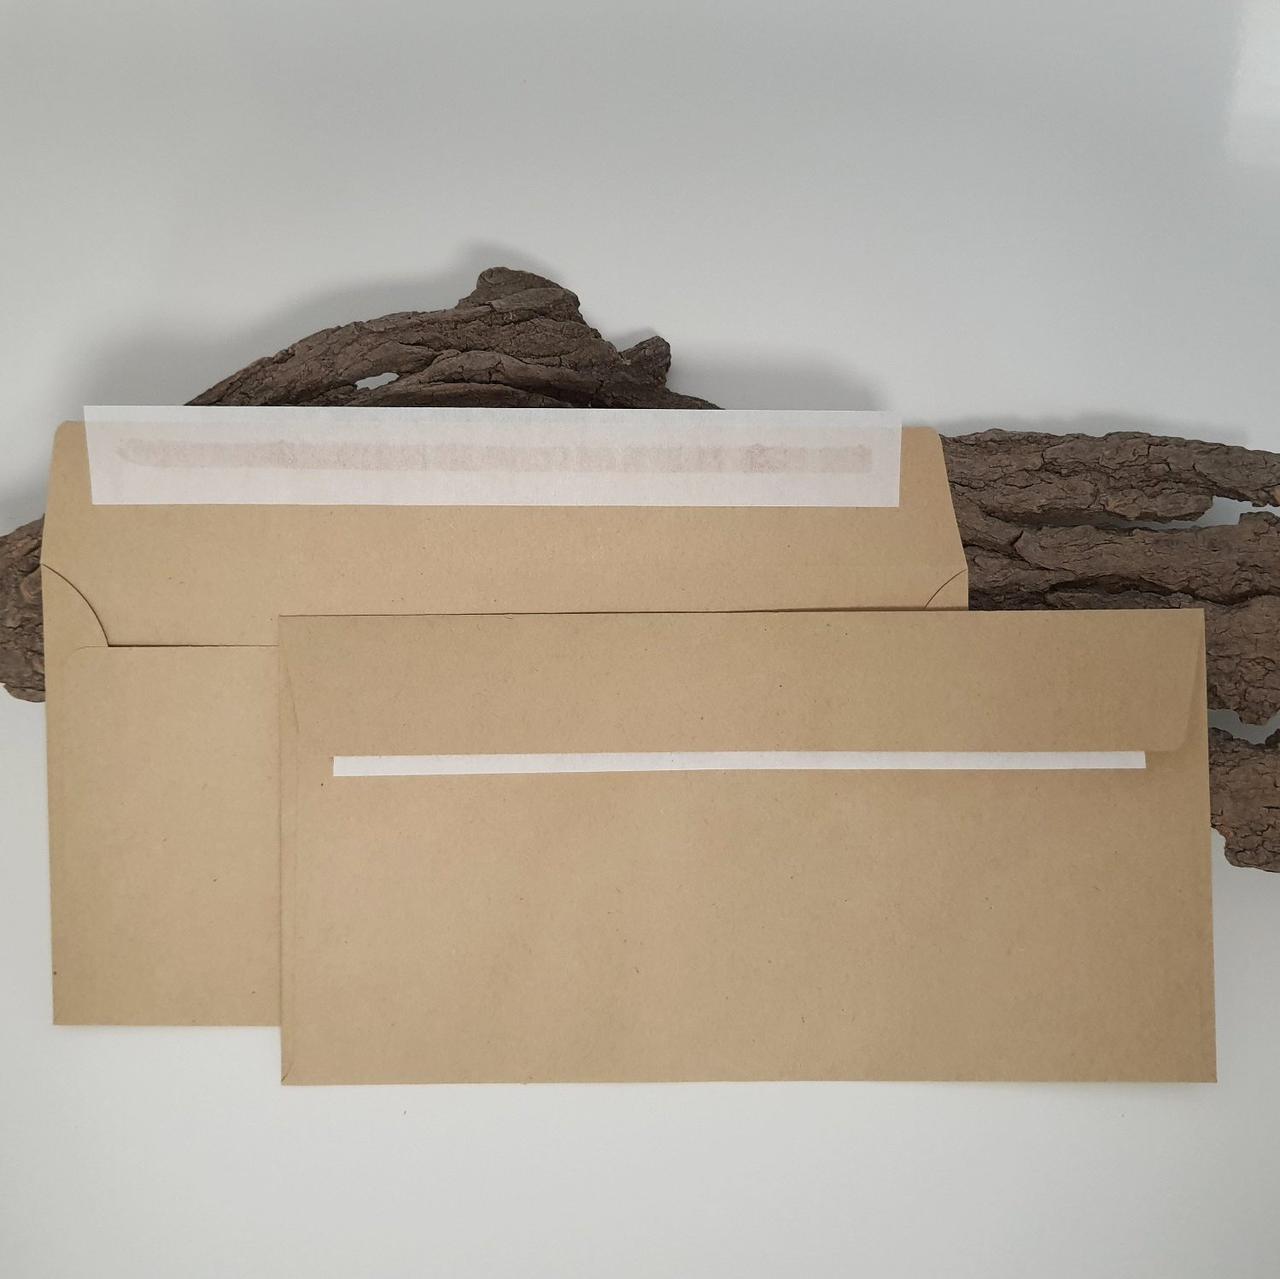 Поштовий крафт конверт DL або Е65, 110х220 мм, SKL, 80 г/м2, Євро, від 1 шт